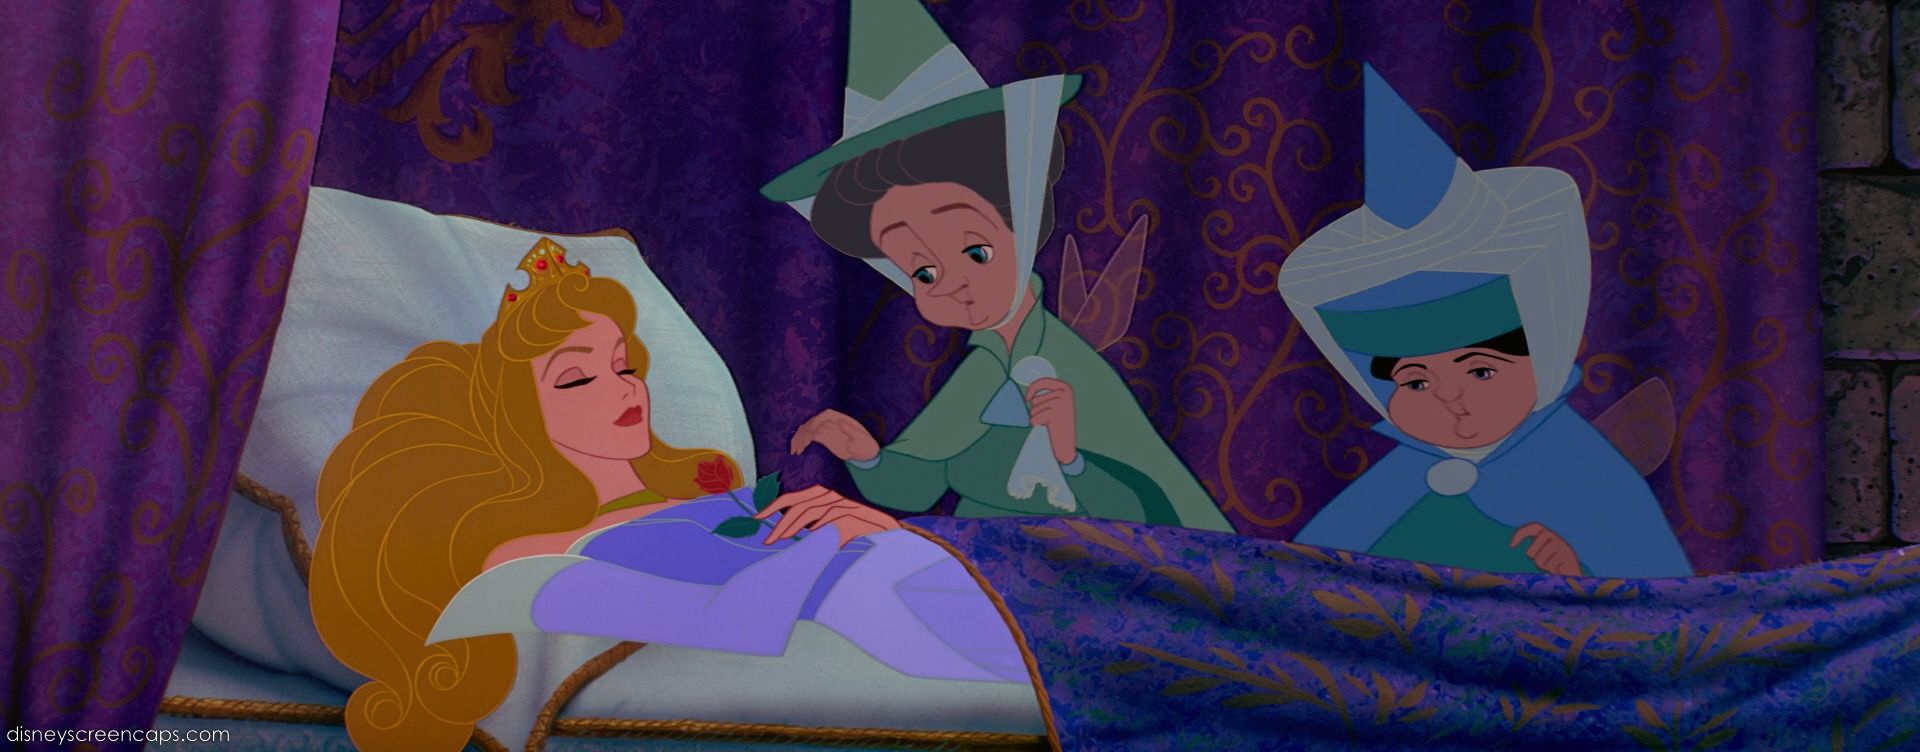 10 chi tiết khó hiểu từ loạt phim công chúa Disney: Đôi giày của Lọ Lem đến giờ vẫn là bí ẩn - Ảnh 9.